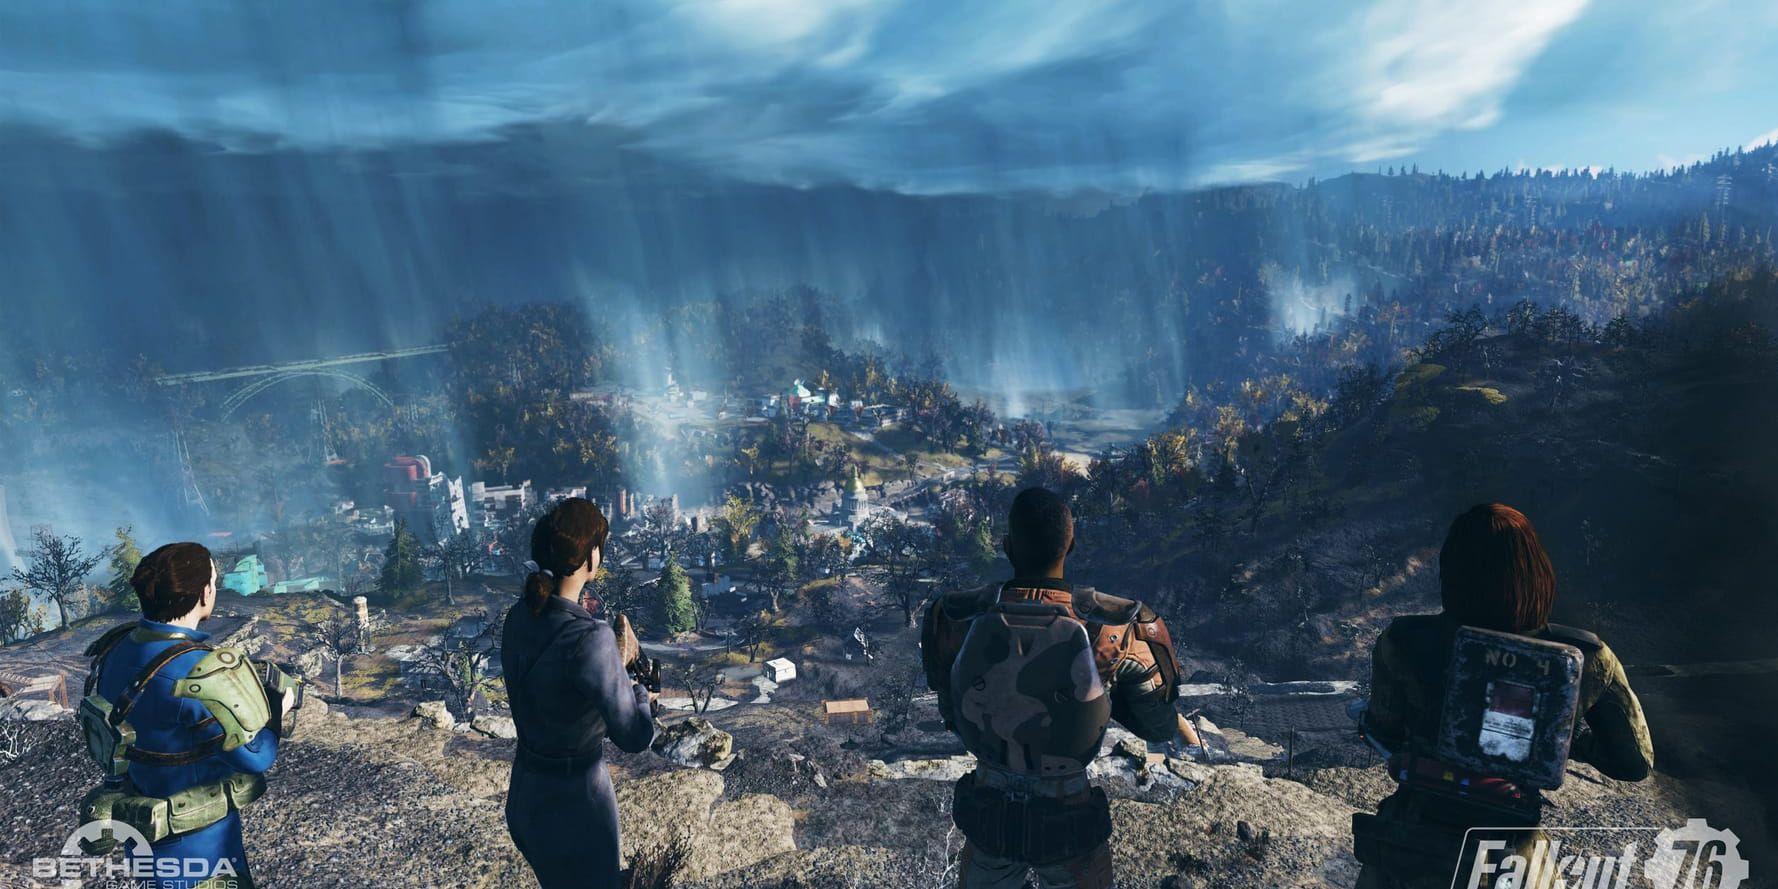 I "Fallout 76" får spelaren utforska ödemarken tillsammans med sina kompisar online. Pressbild.